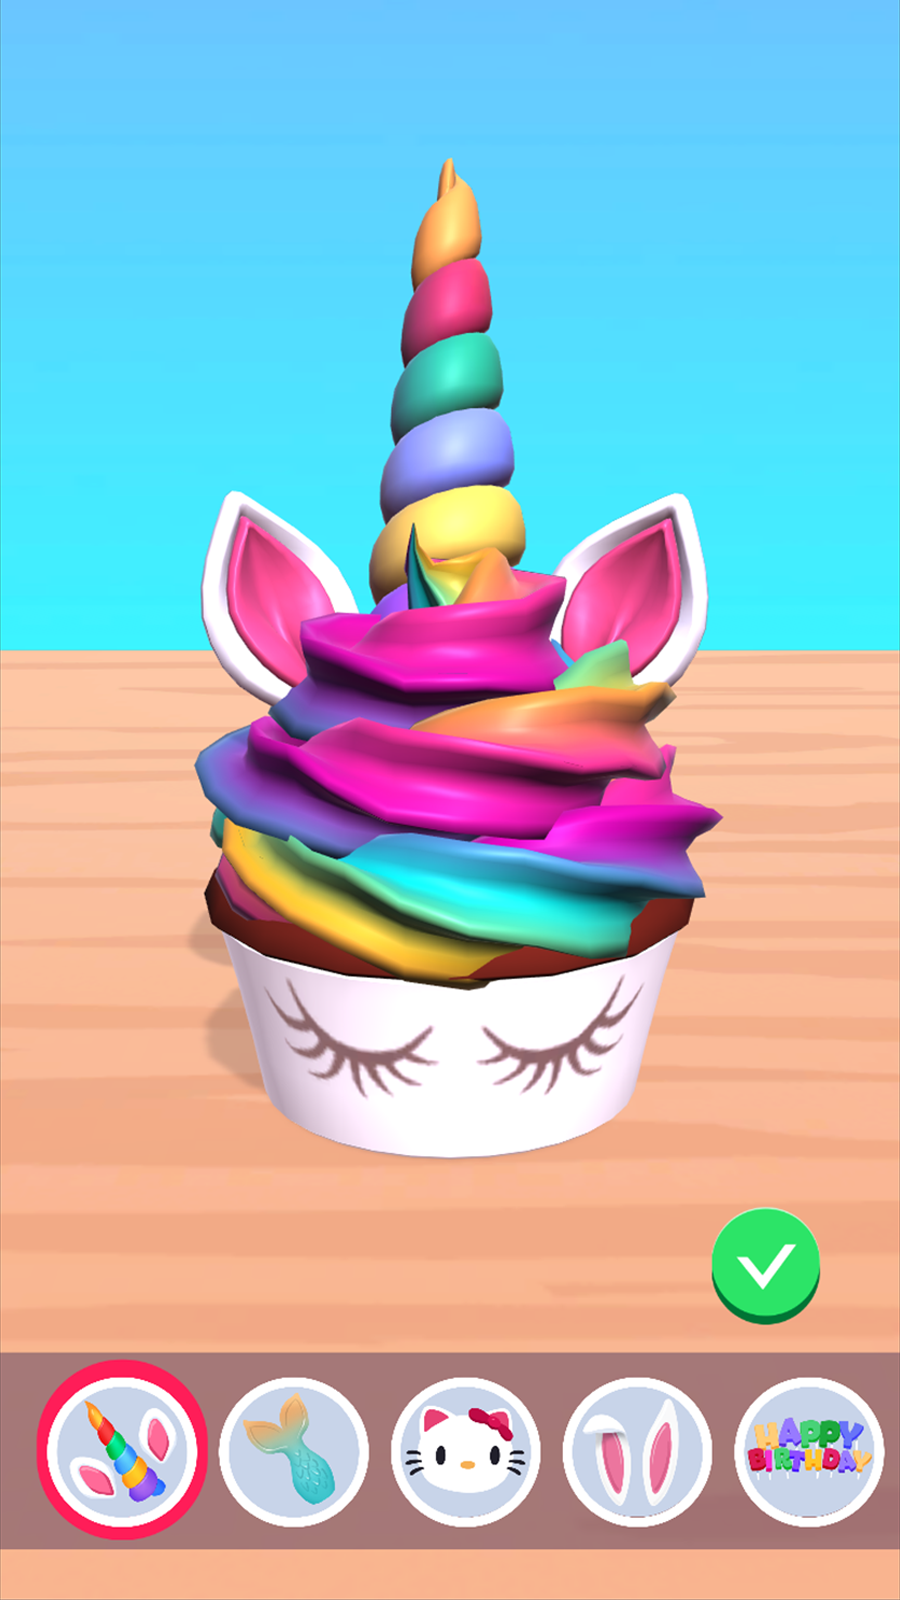 Screenshot 1 of Cupcake Unicorn 1.0.0